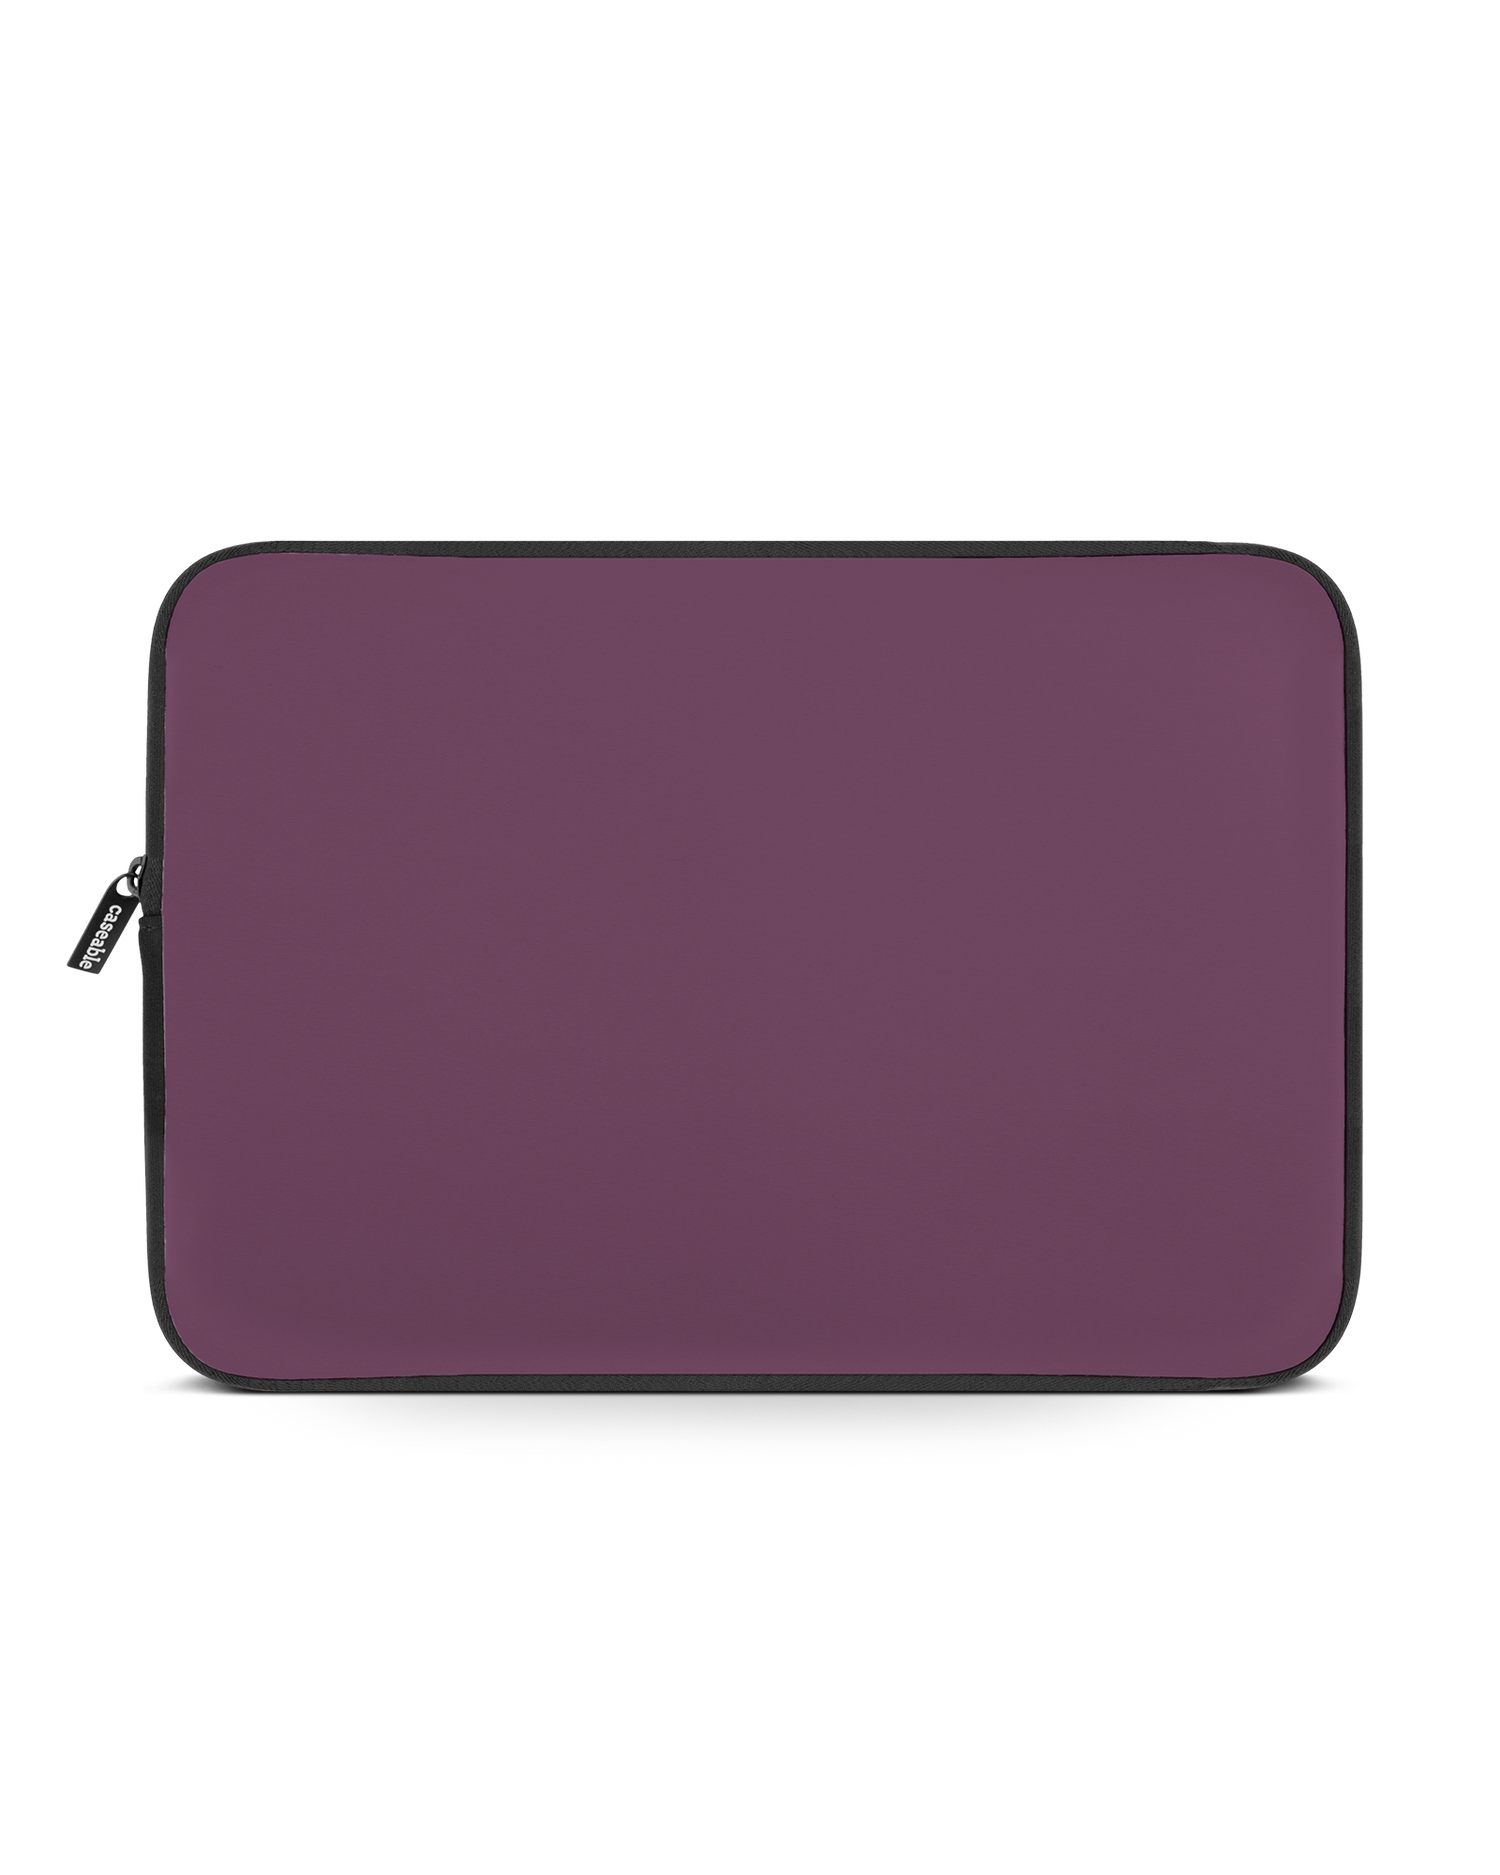 PLUM Laptop Case 15-16 inch: Front View